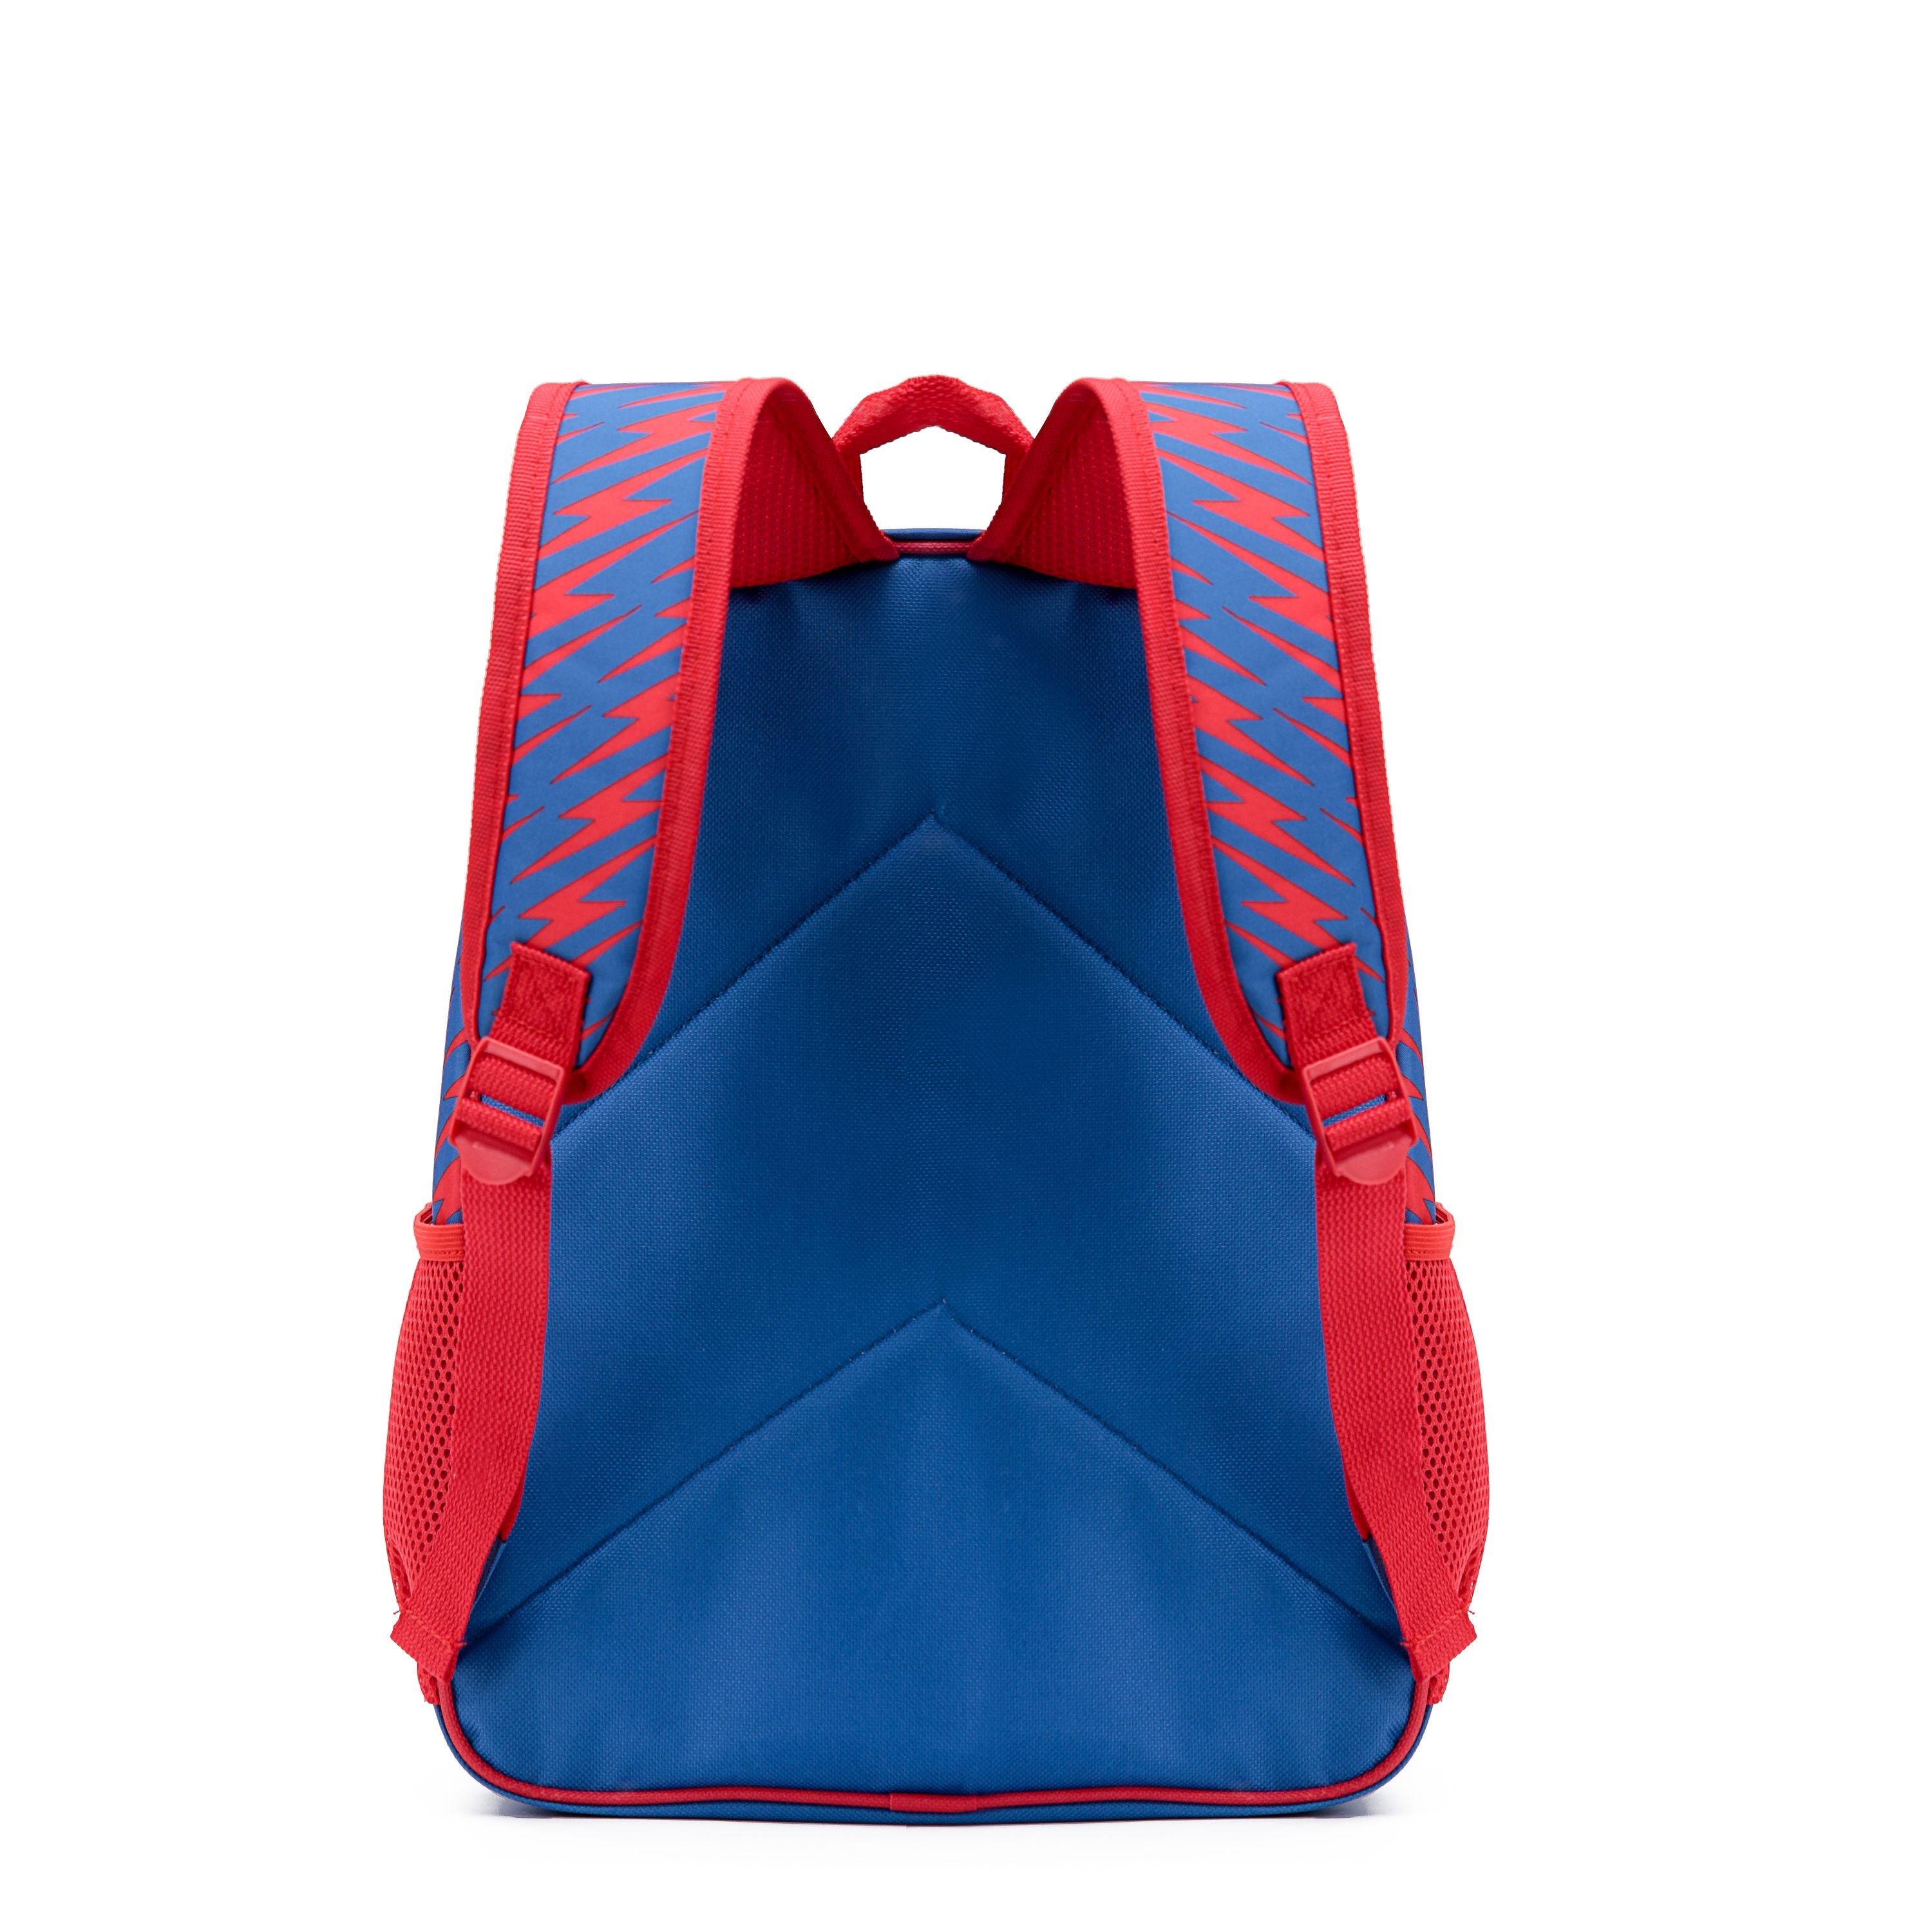 Marvel - Spider Man Mar093 15in Hologram Backpack - Red/Blue-1